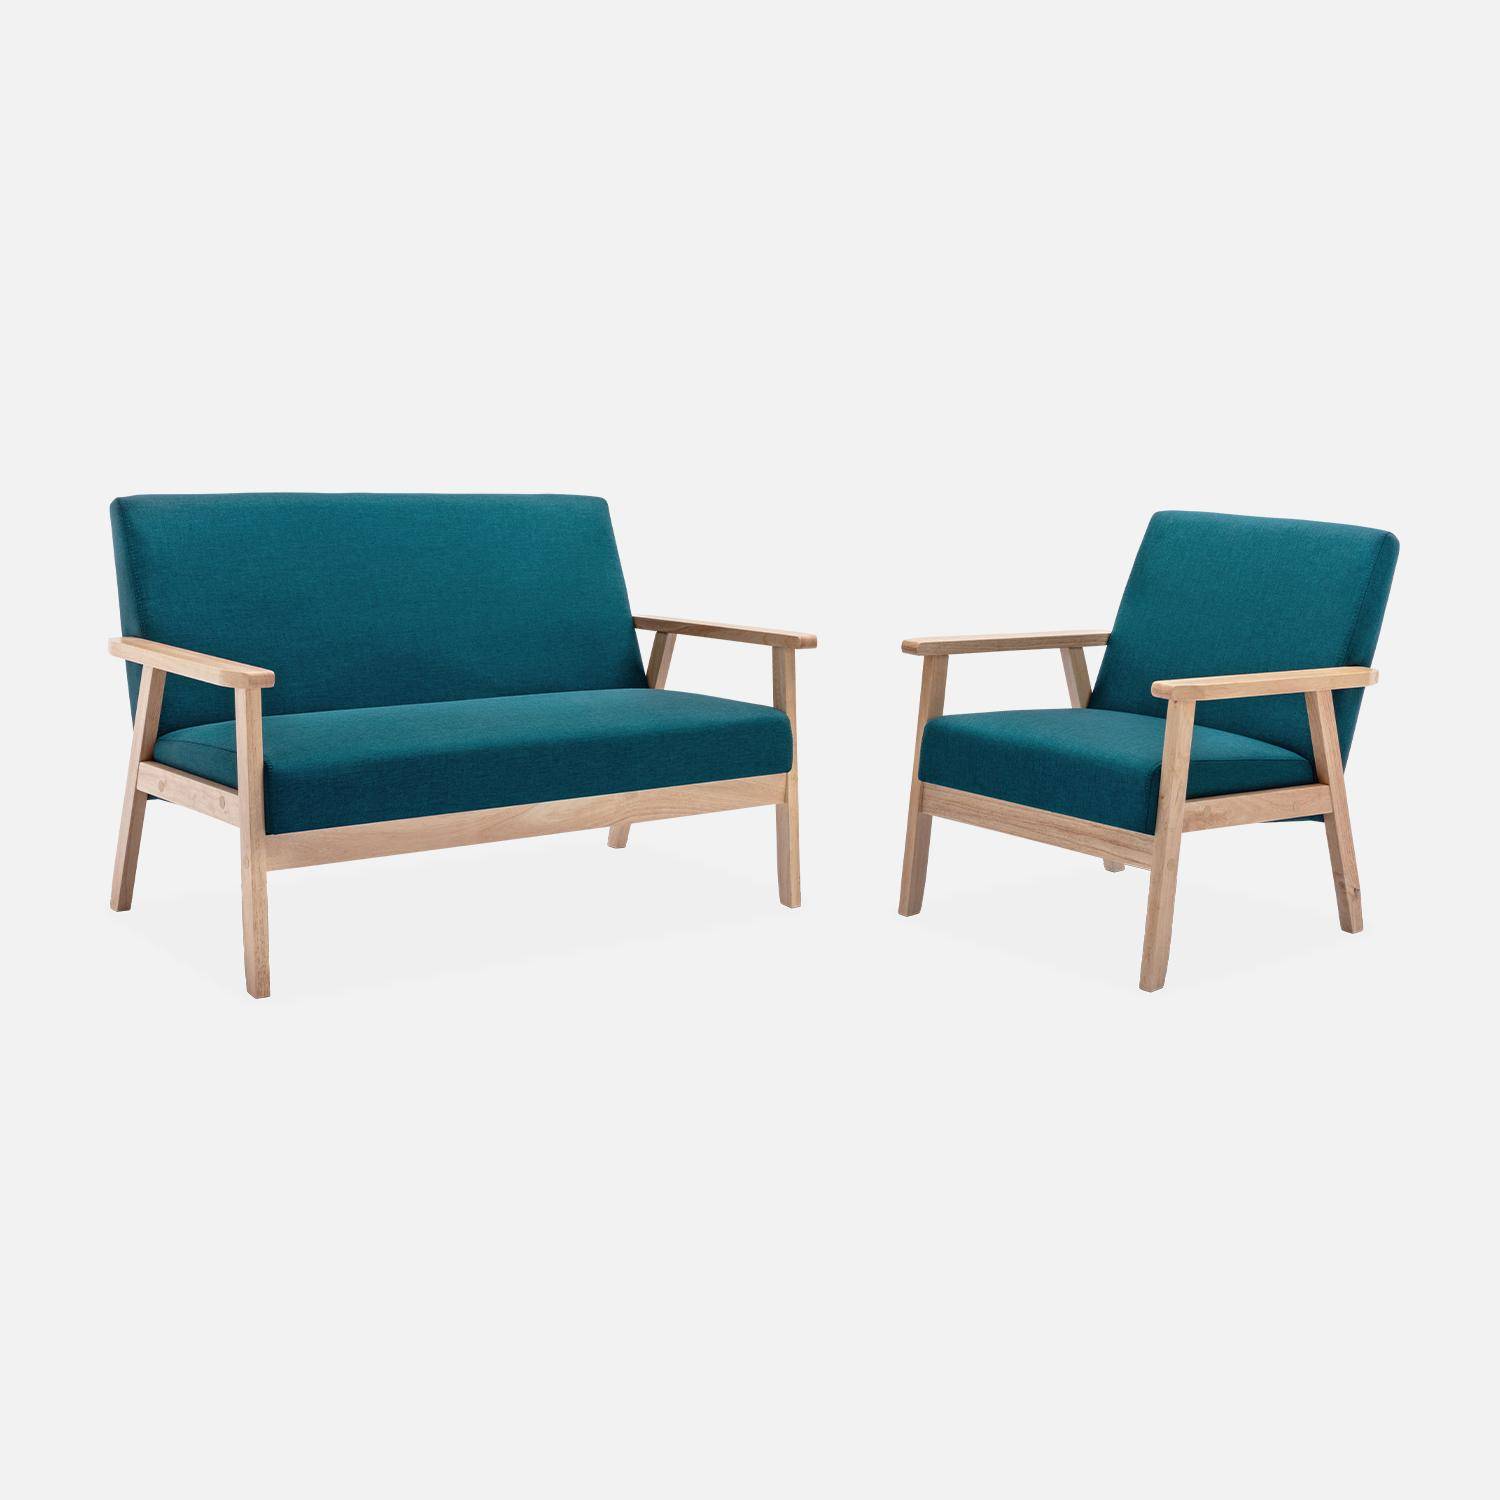 Banco y sillón escandinavos de madera y tela azul petróleo L 114 x A 69,5 x Alt 73cm Photo2